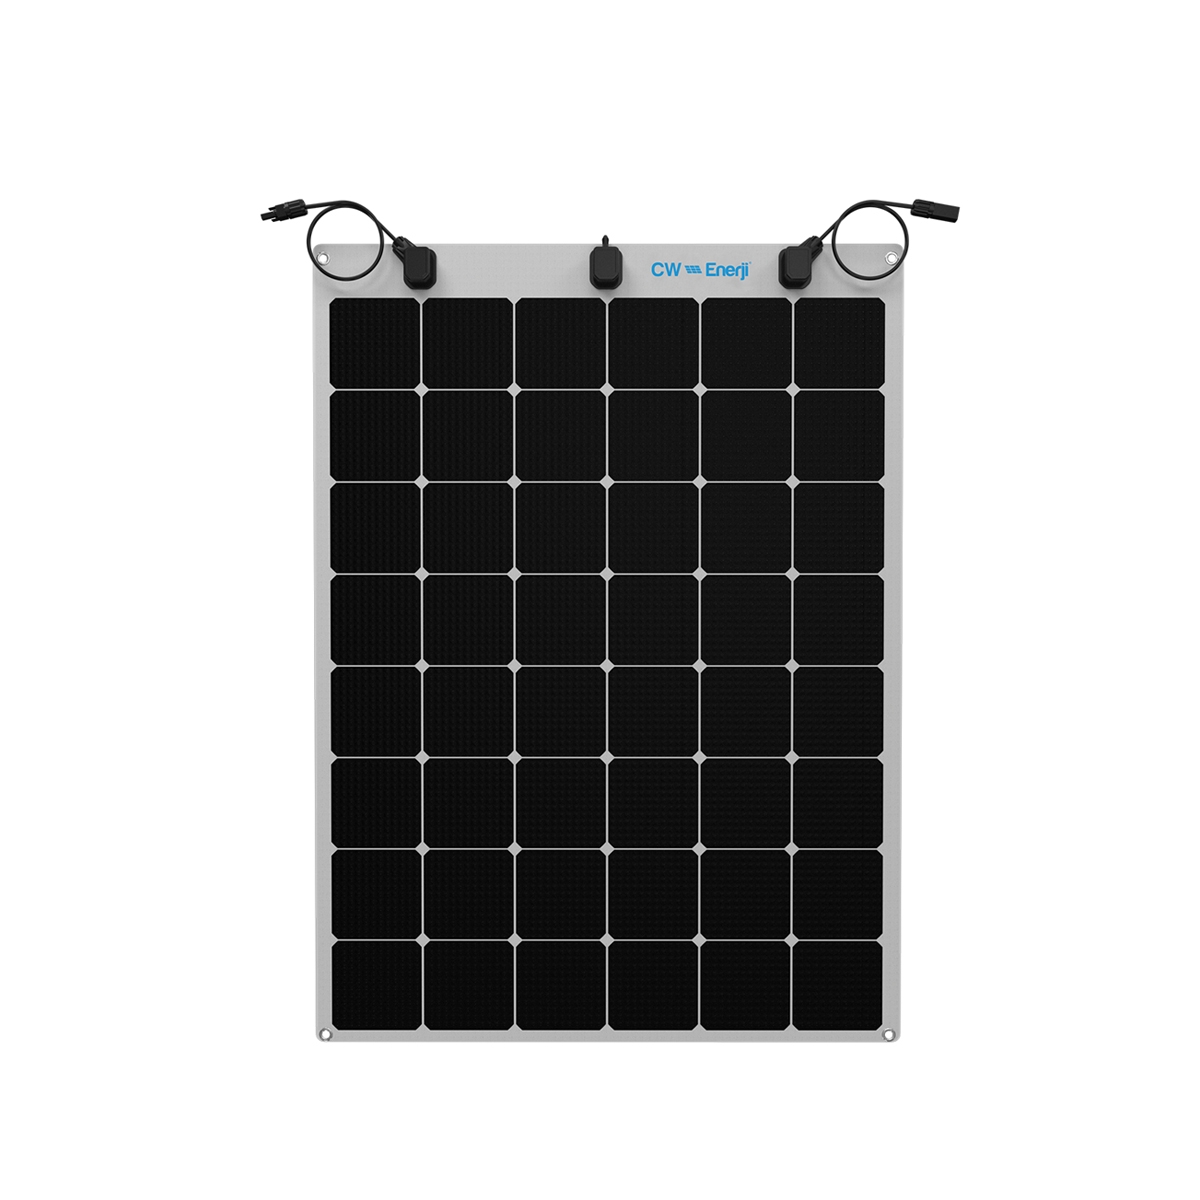 Turkish Solar Panel Manufacturers nangungunang 10 6